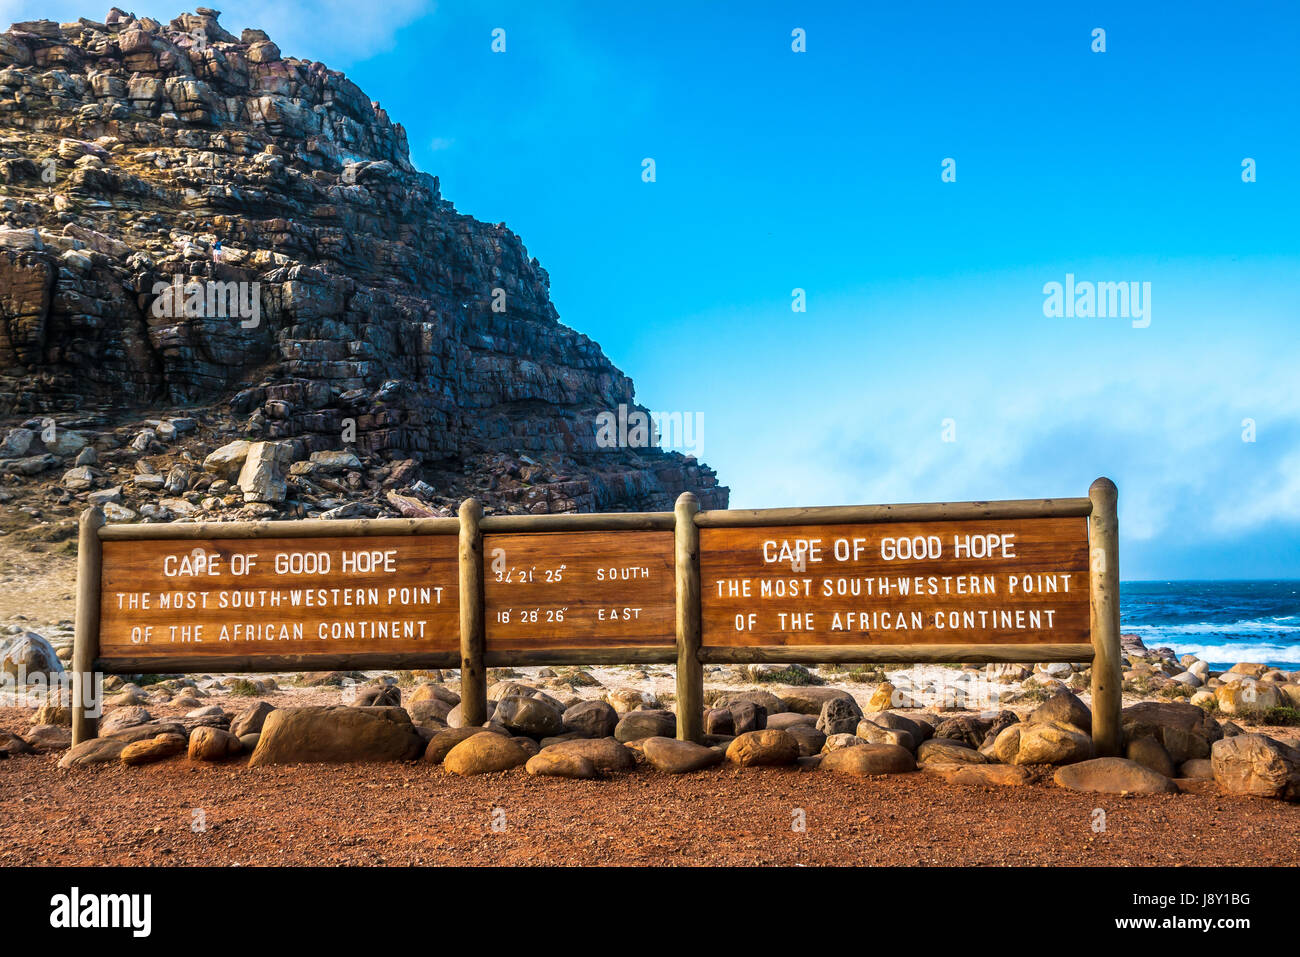 Information Board, Längen- und Breitengrad, Kap der Guten Hoffnung, Cape Peninsula, Western Cape, Südafrika, südwestlichste Punkt afrikanischen Kontinent Stockfoto